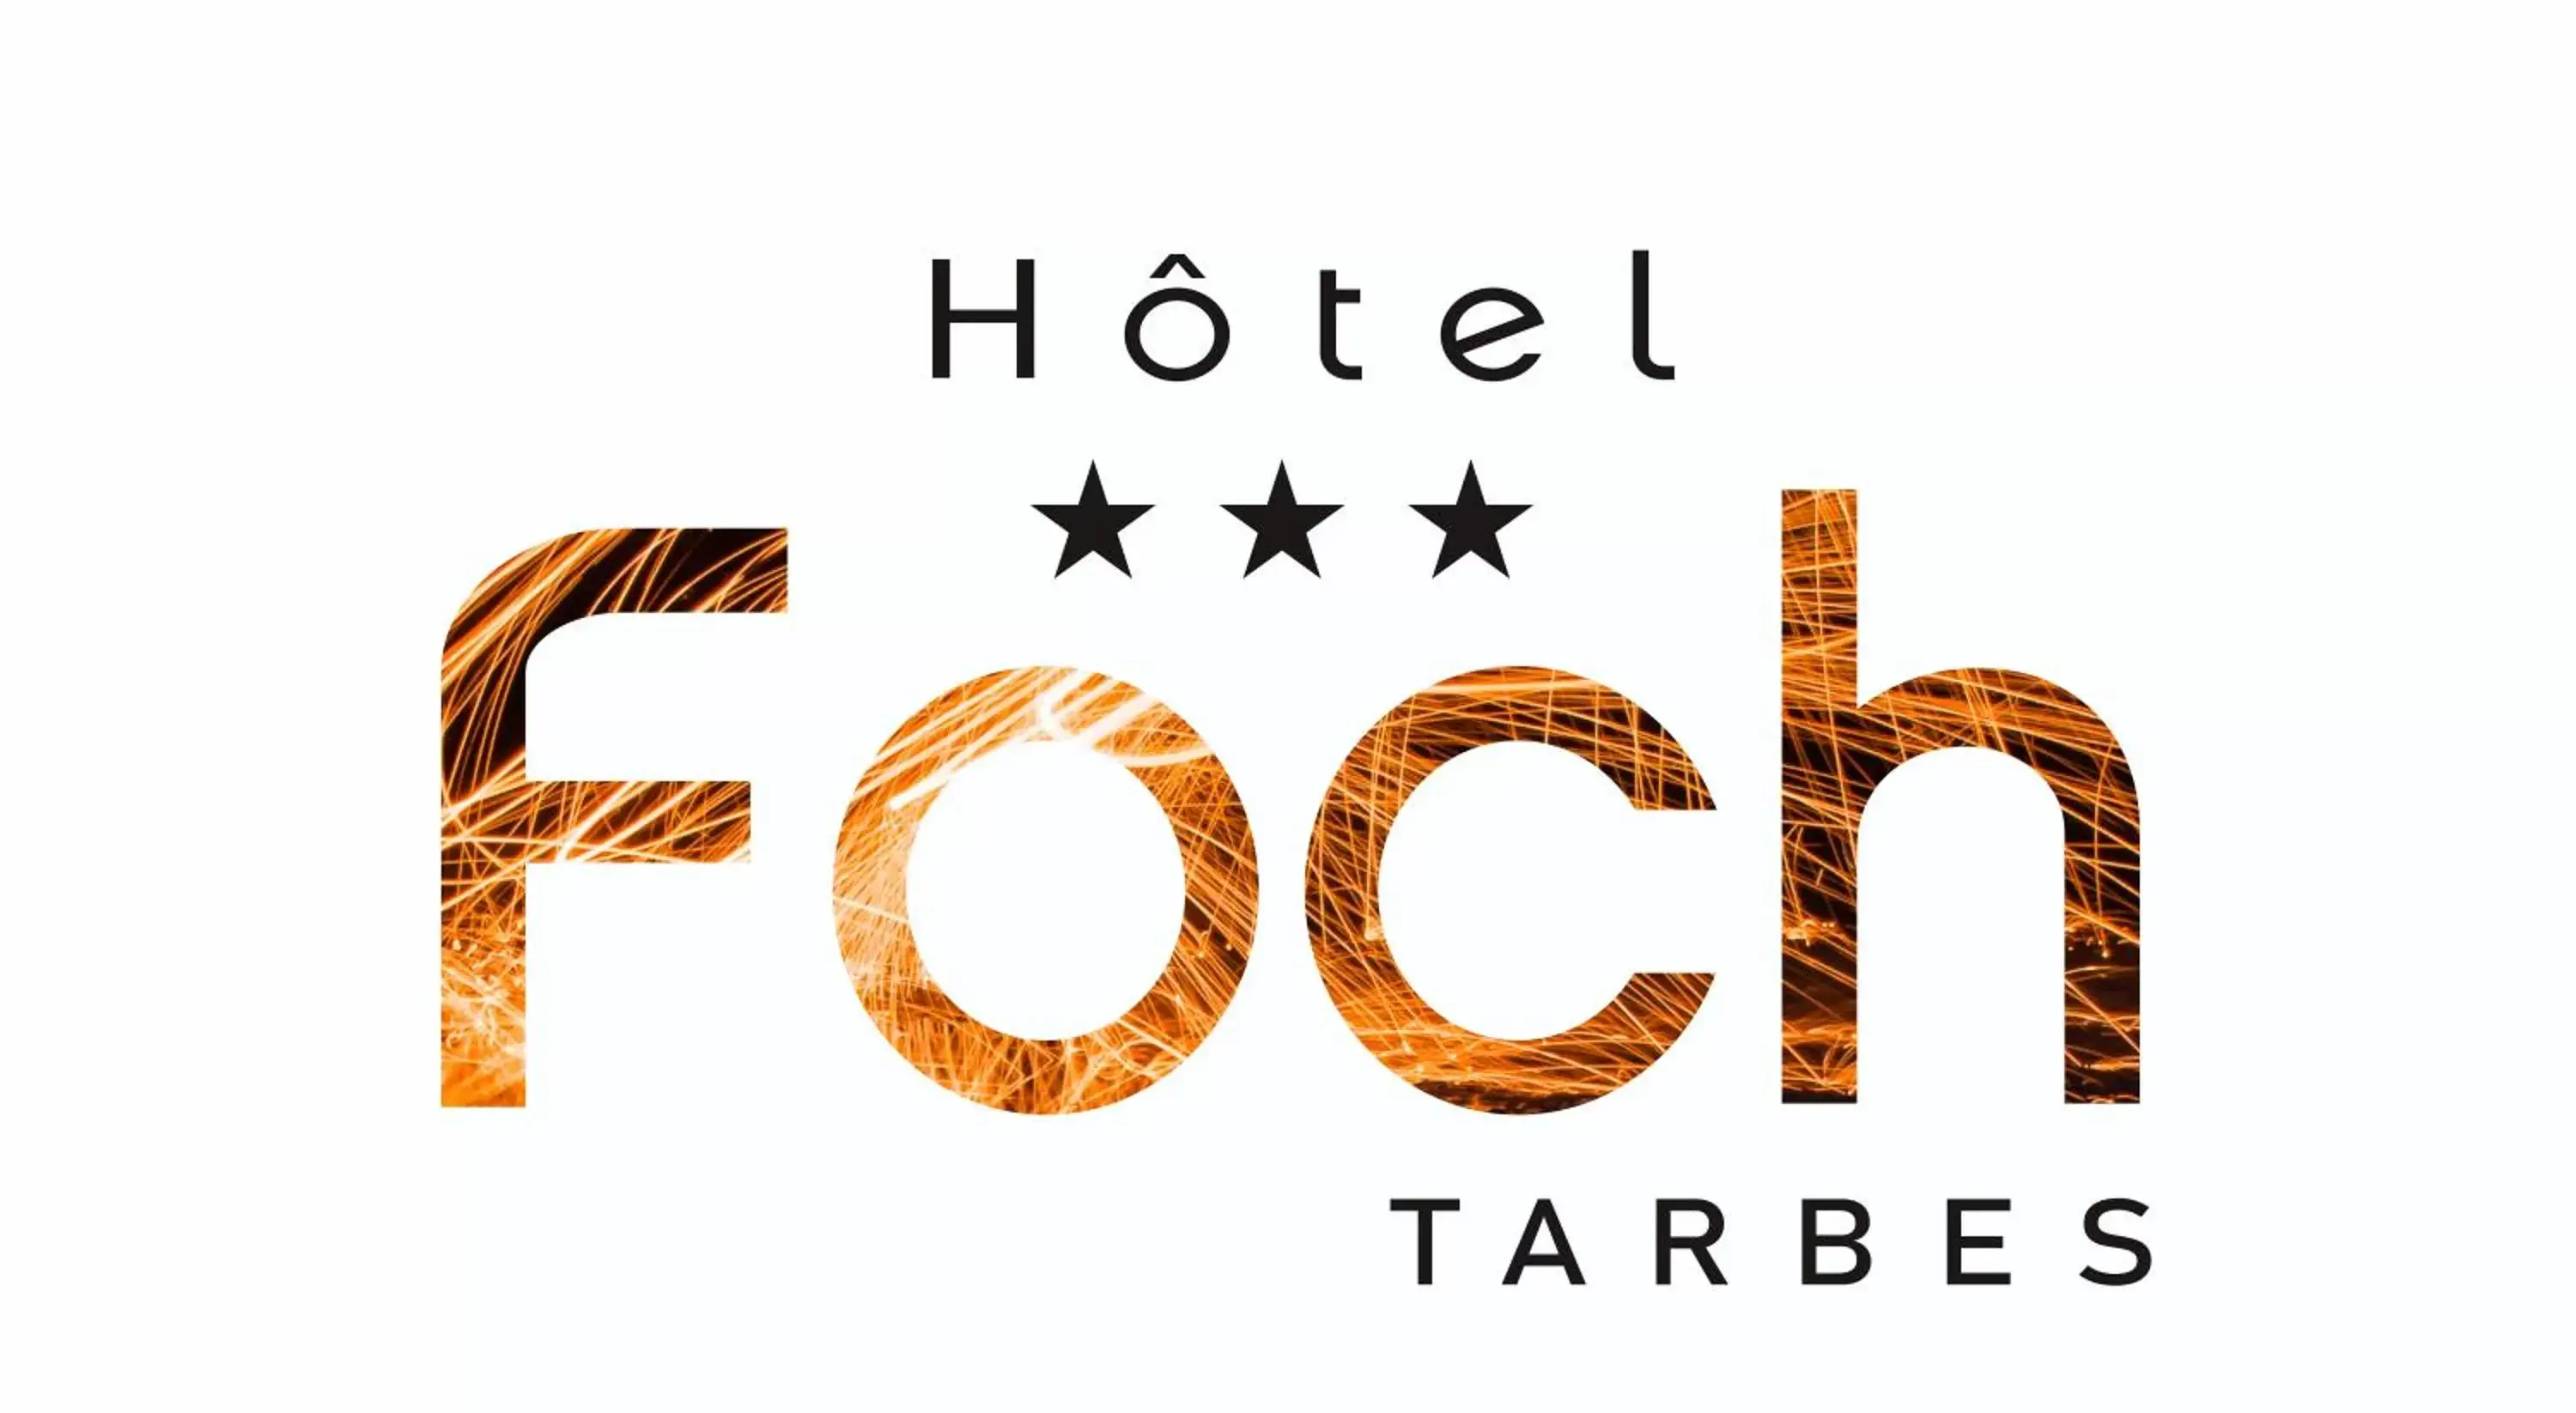 Hôtel Foch